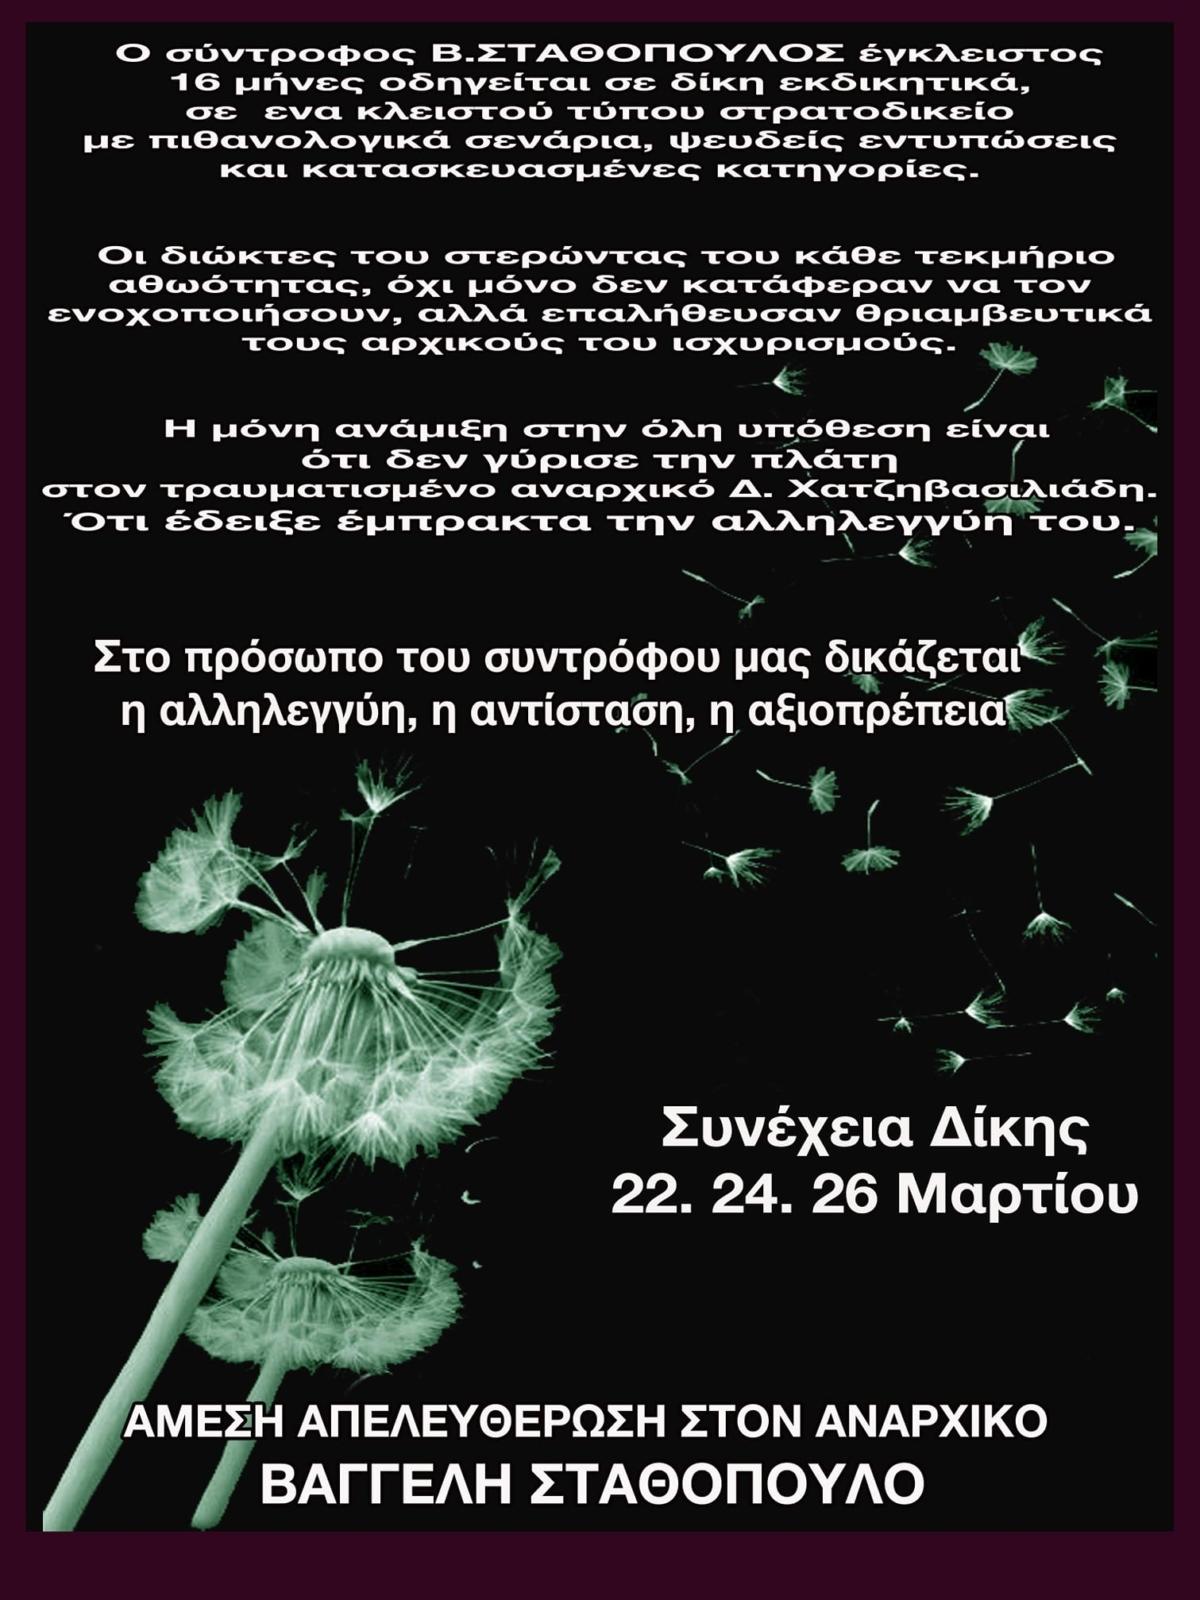 Αθήνα: Κάλεσμα σε συγκέντρωση για τον σύντροφο Β. Σταθόπουλο